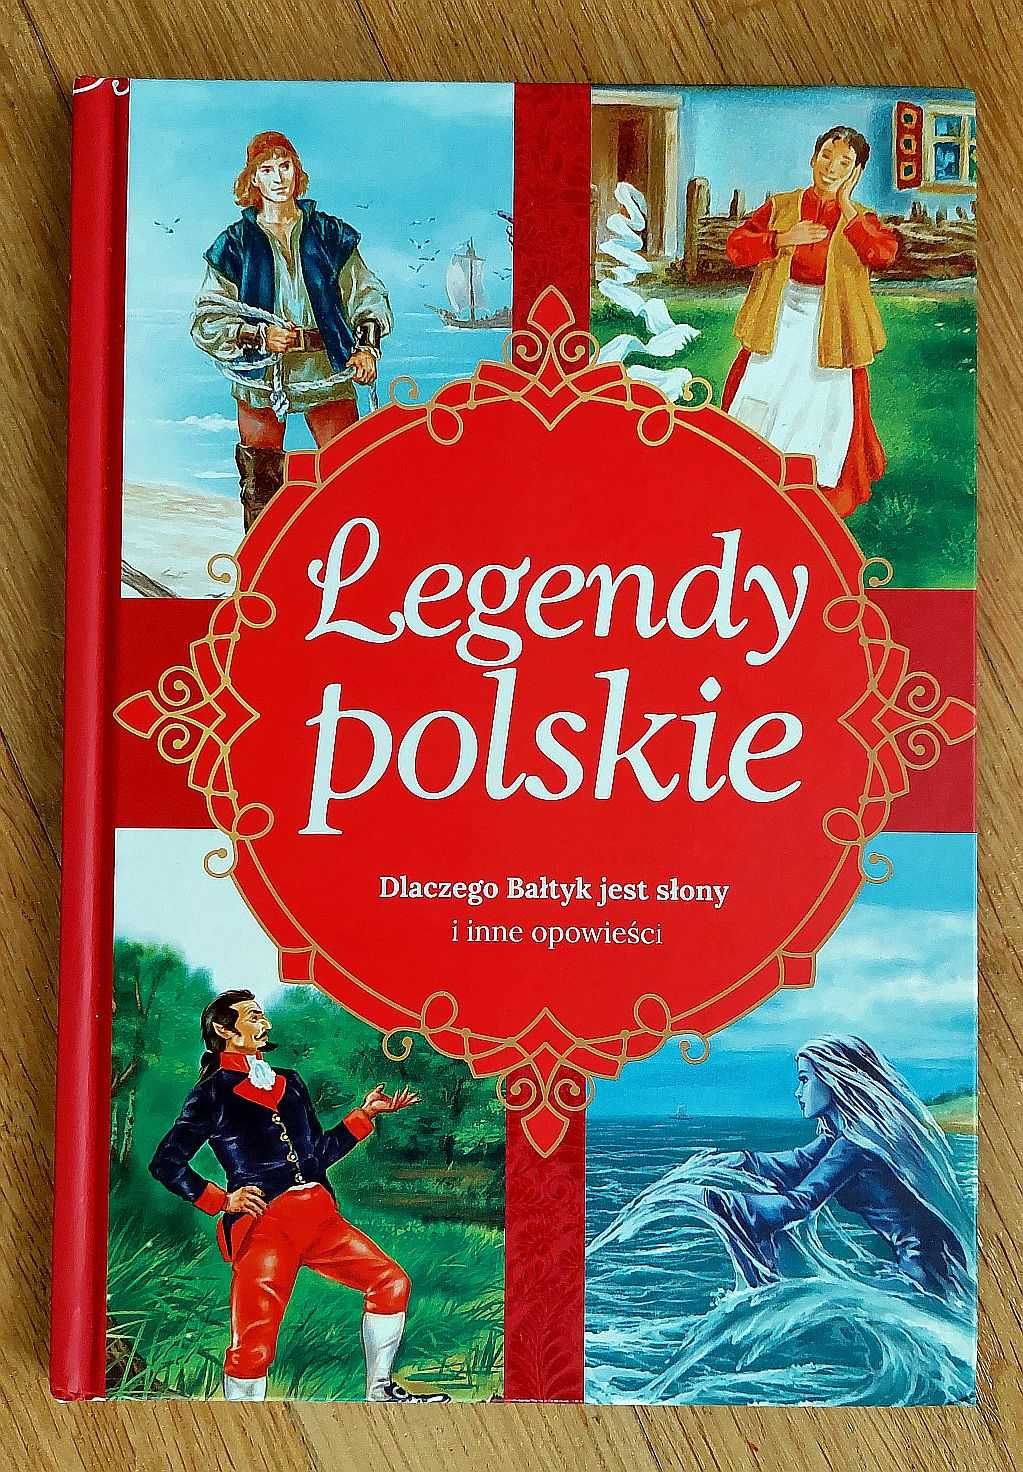 Legendy polskie. Dlaczego Bałtyk jest słony i inne opowiadania